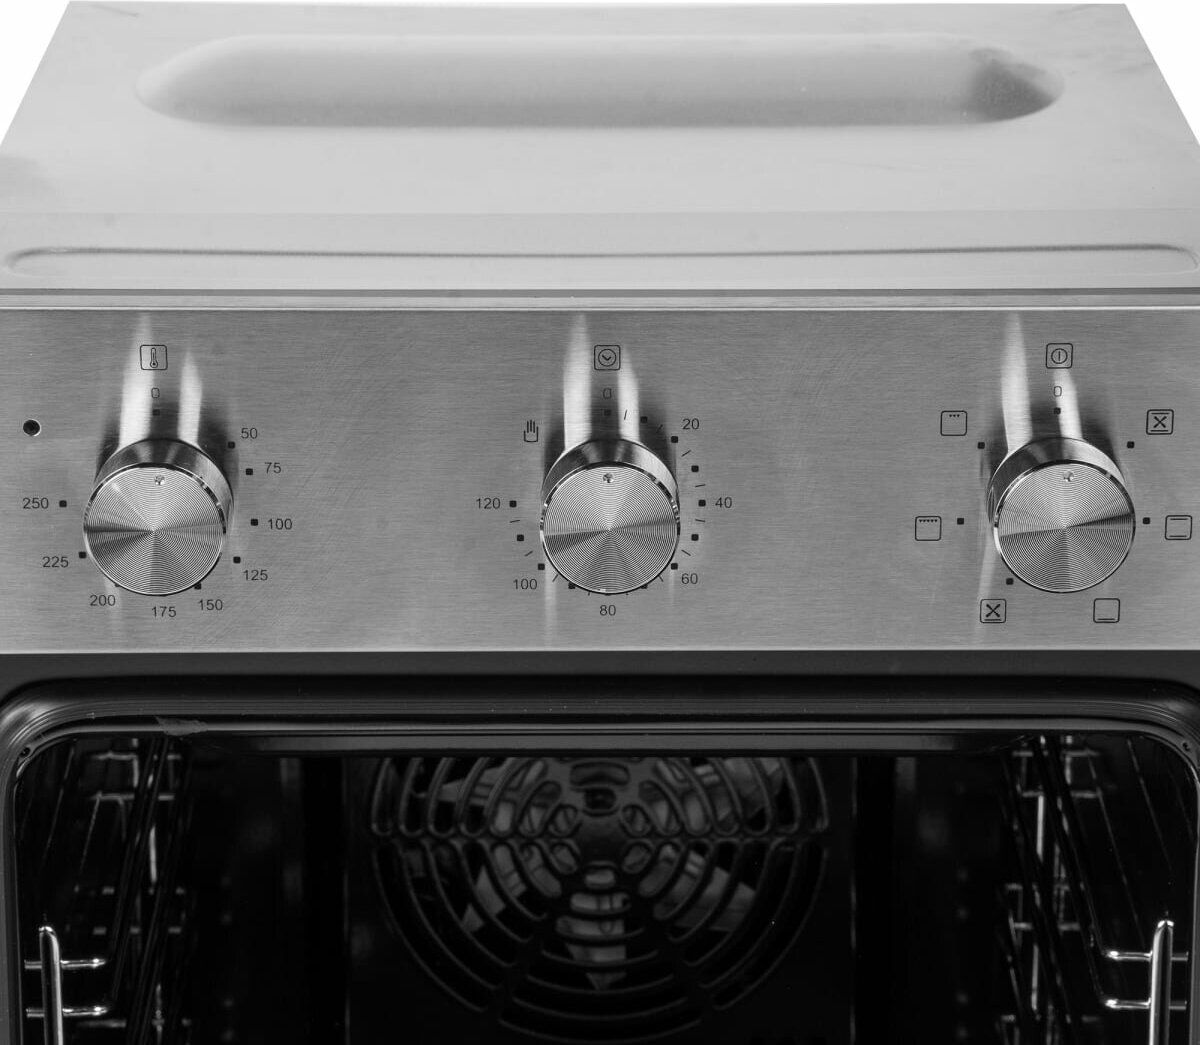 Духовой шкаф электрический встраиваемый ORE VS45 Inox, ширина 45 см, цвет нержавеющая сталь, 6 режимов приготовления - фотография № 20